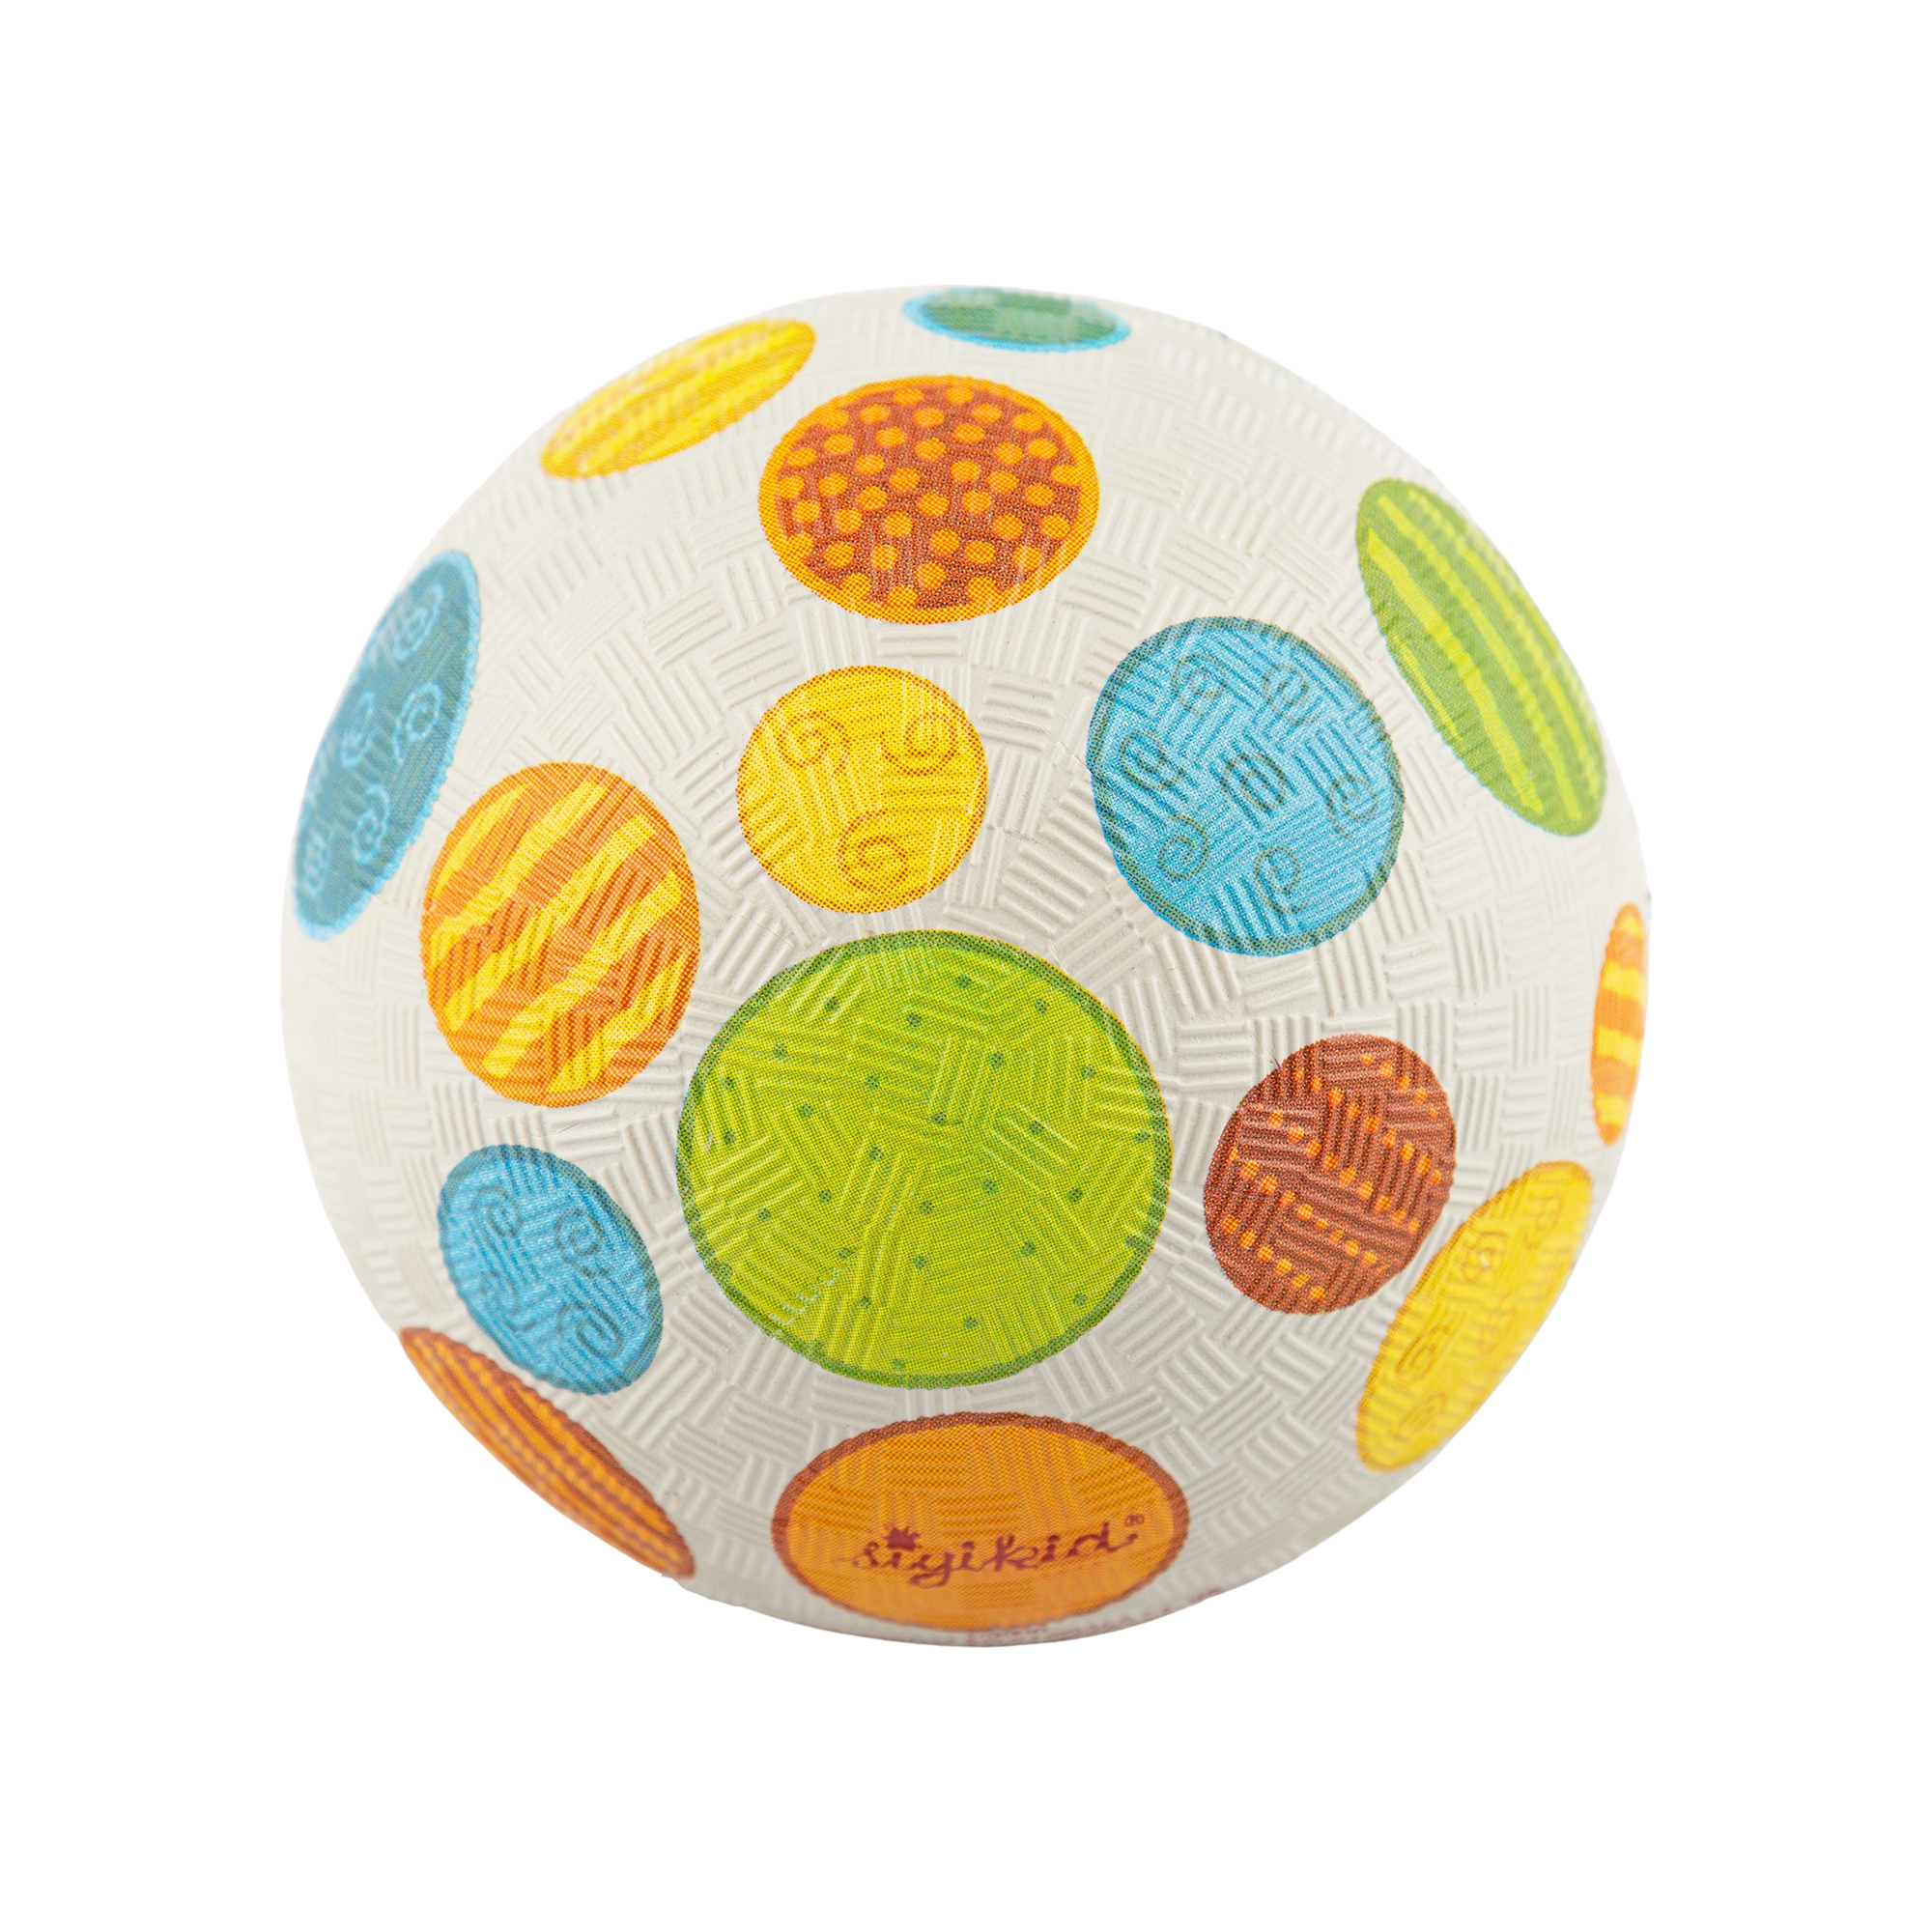 Rubber ball, small size, multicoloured